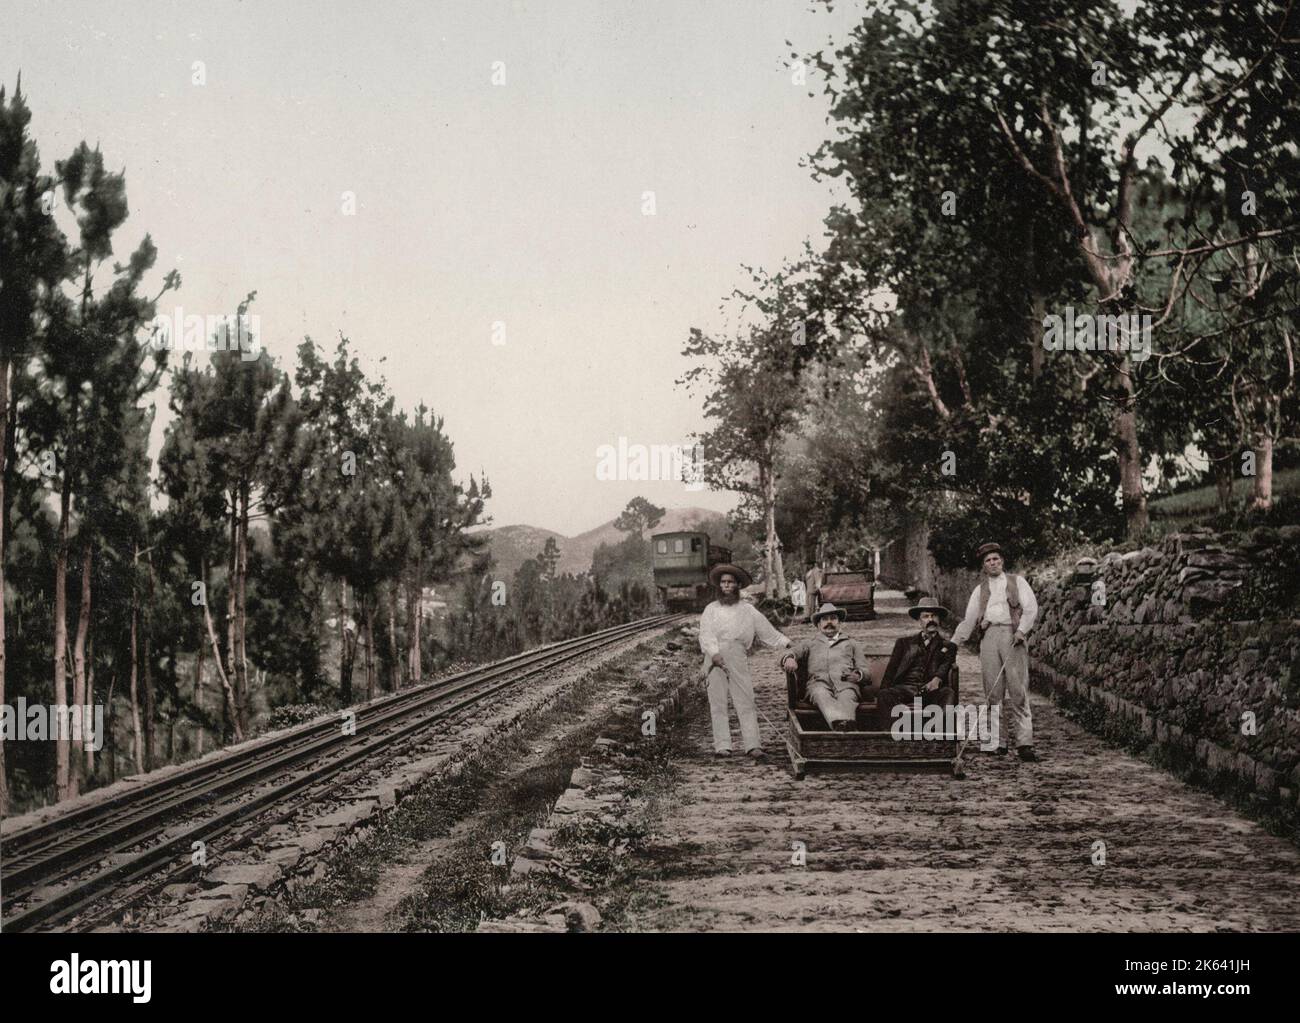 Touristen, die auf einem Schlitten, Madeira, gezogen werden. Vintage 19. Jahrhundert Foto. Stockfoto